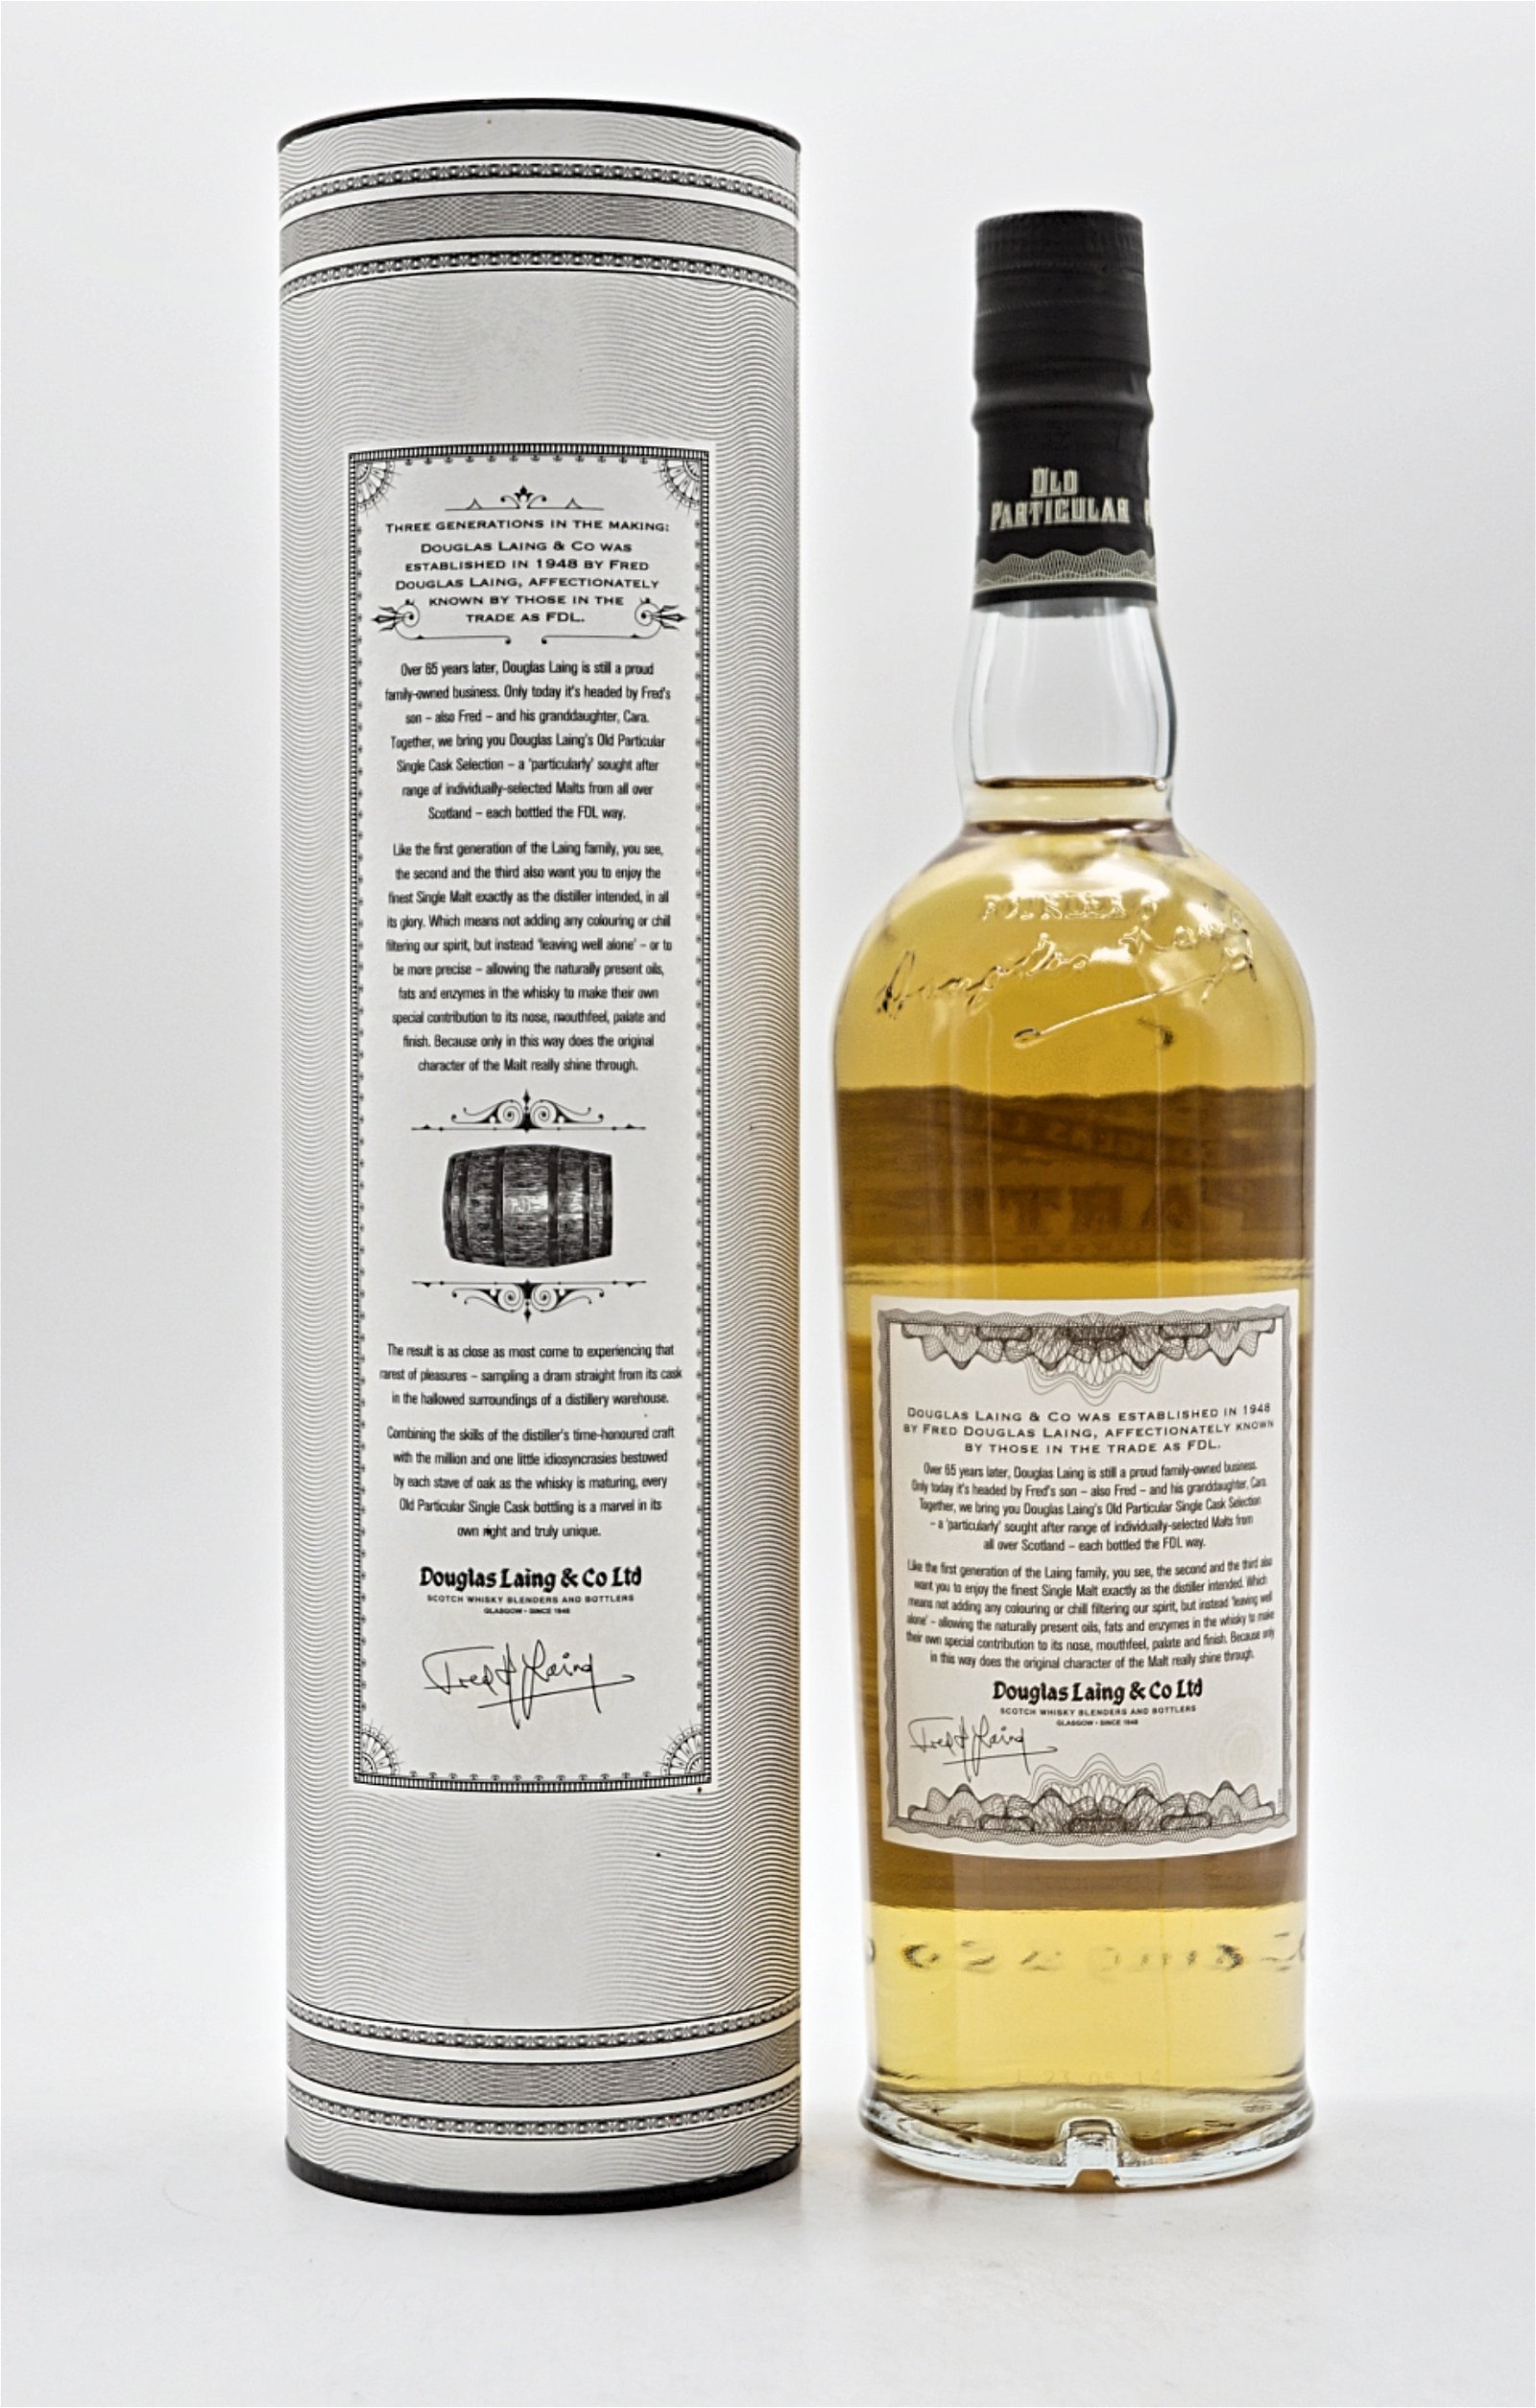 Old Particular Glen Garioch Distillery 18 Jahre 1995/2014 48,4% 318 Fl. Single Cask Single Malt Scotch Whisky 